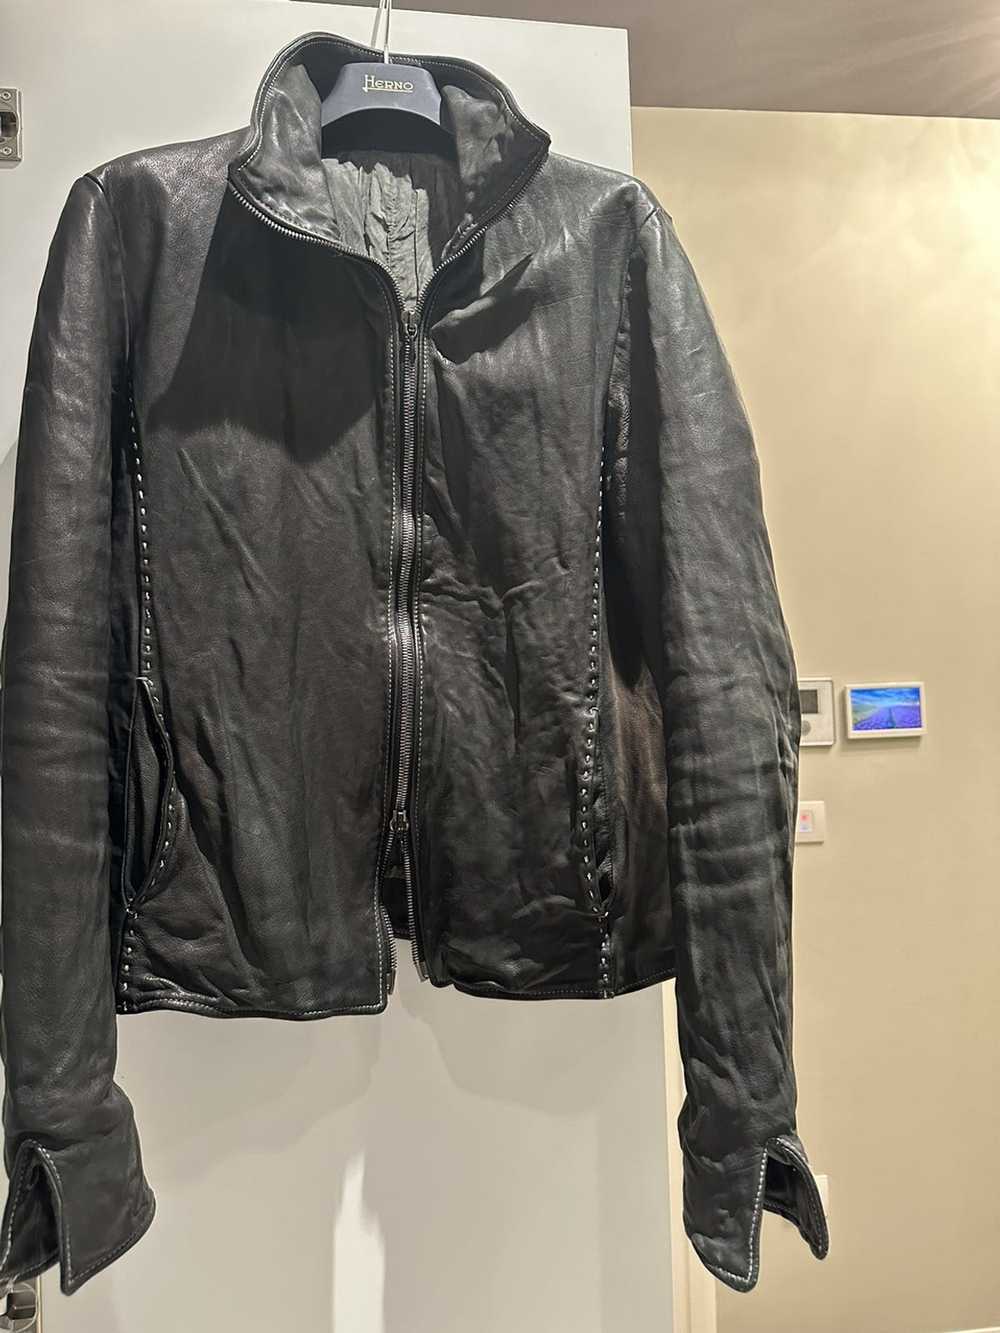 Incarnation Incarnation leather jacket - image 6